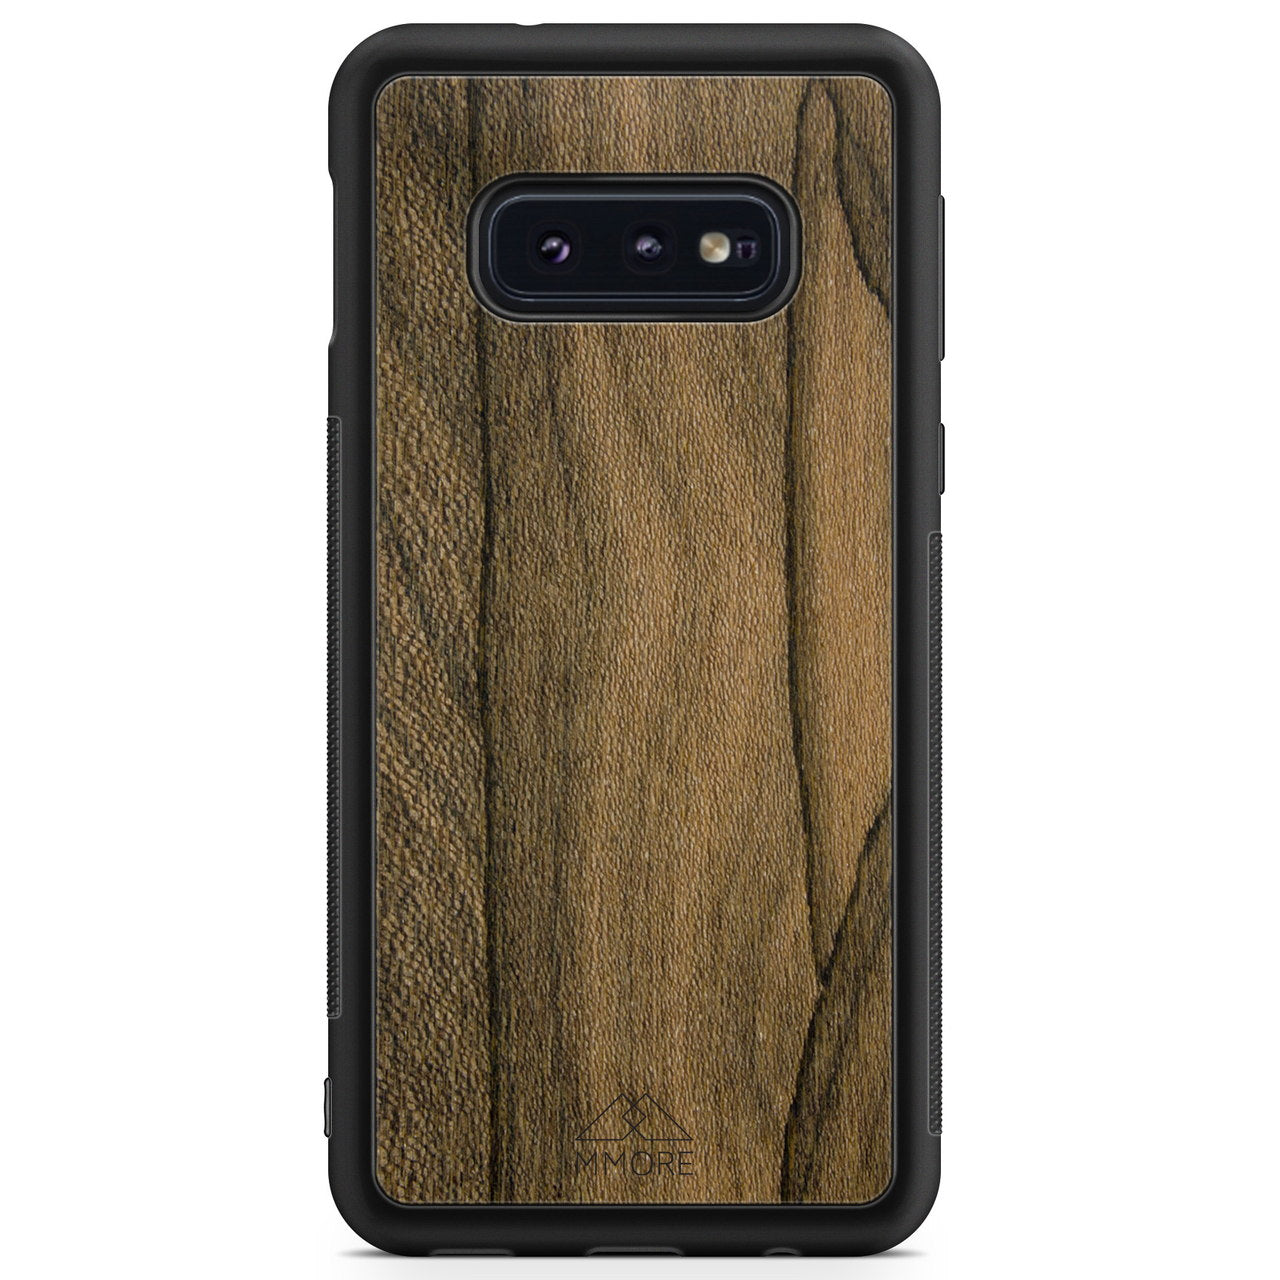 Custodia per telefono Samsung S10 Edge in legno Ziricote